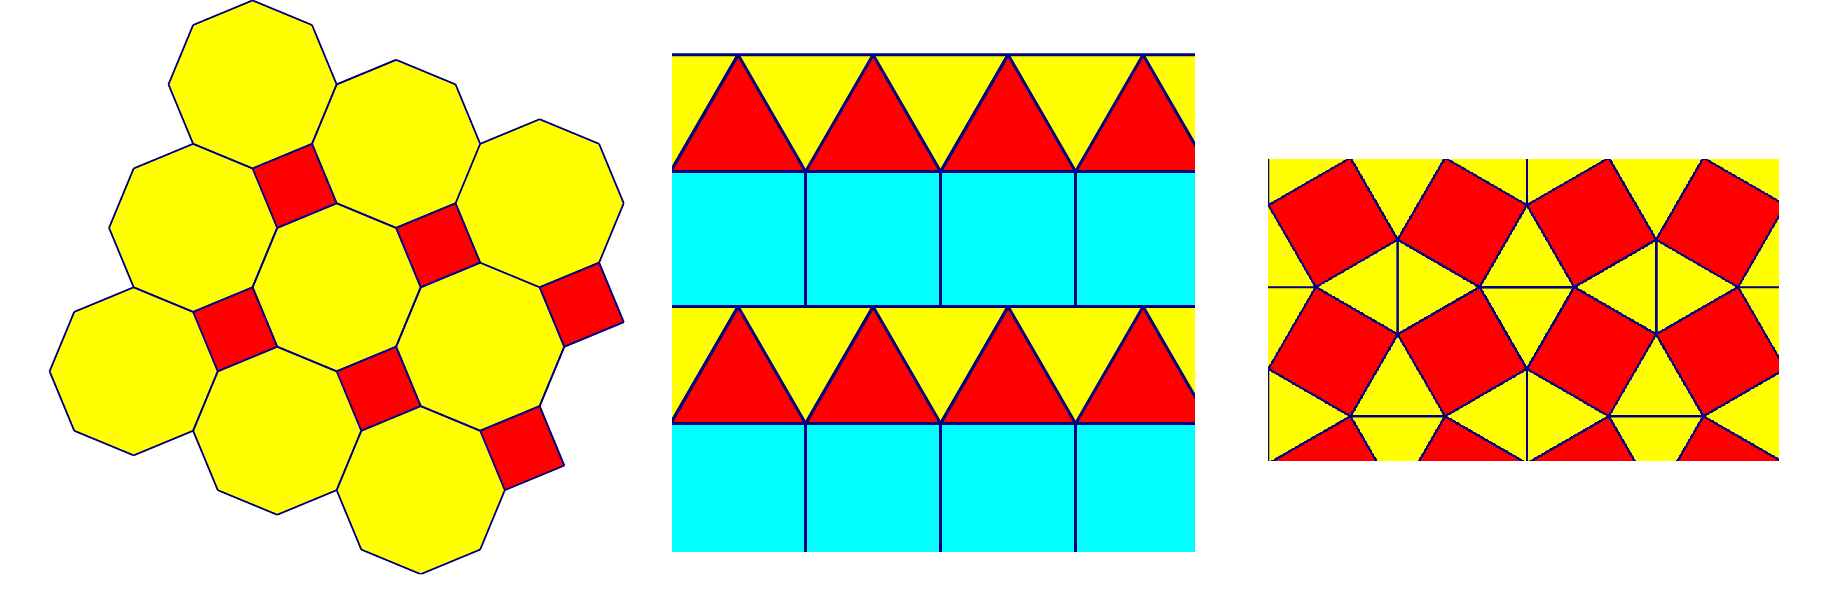 Slika prikazuje popločavanje ravnine kombinacijom dvaju mnogokuta.